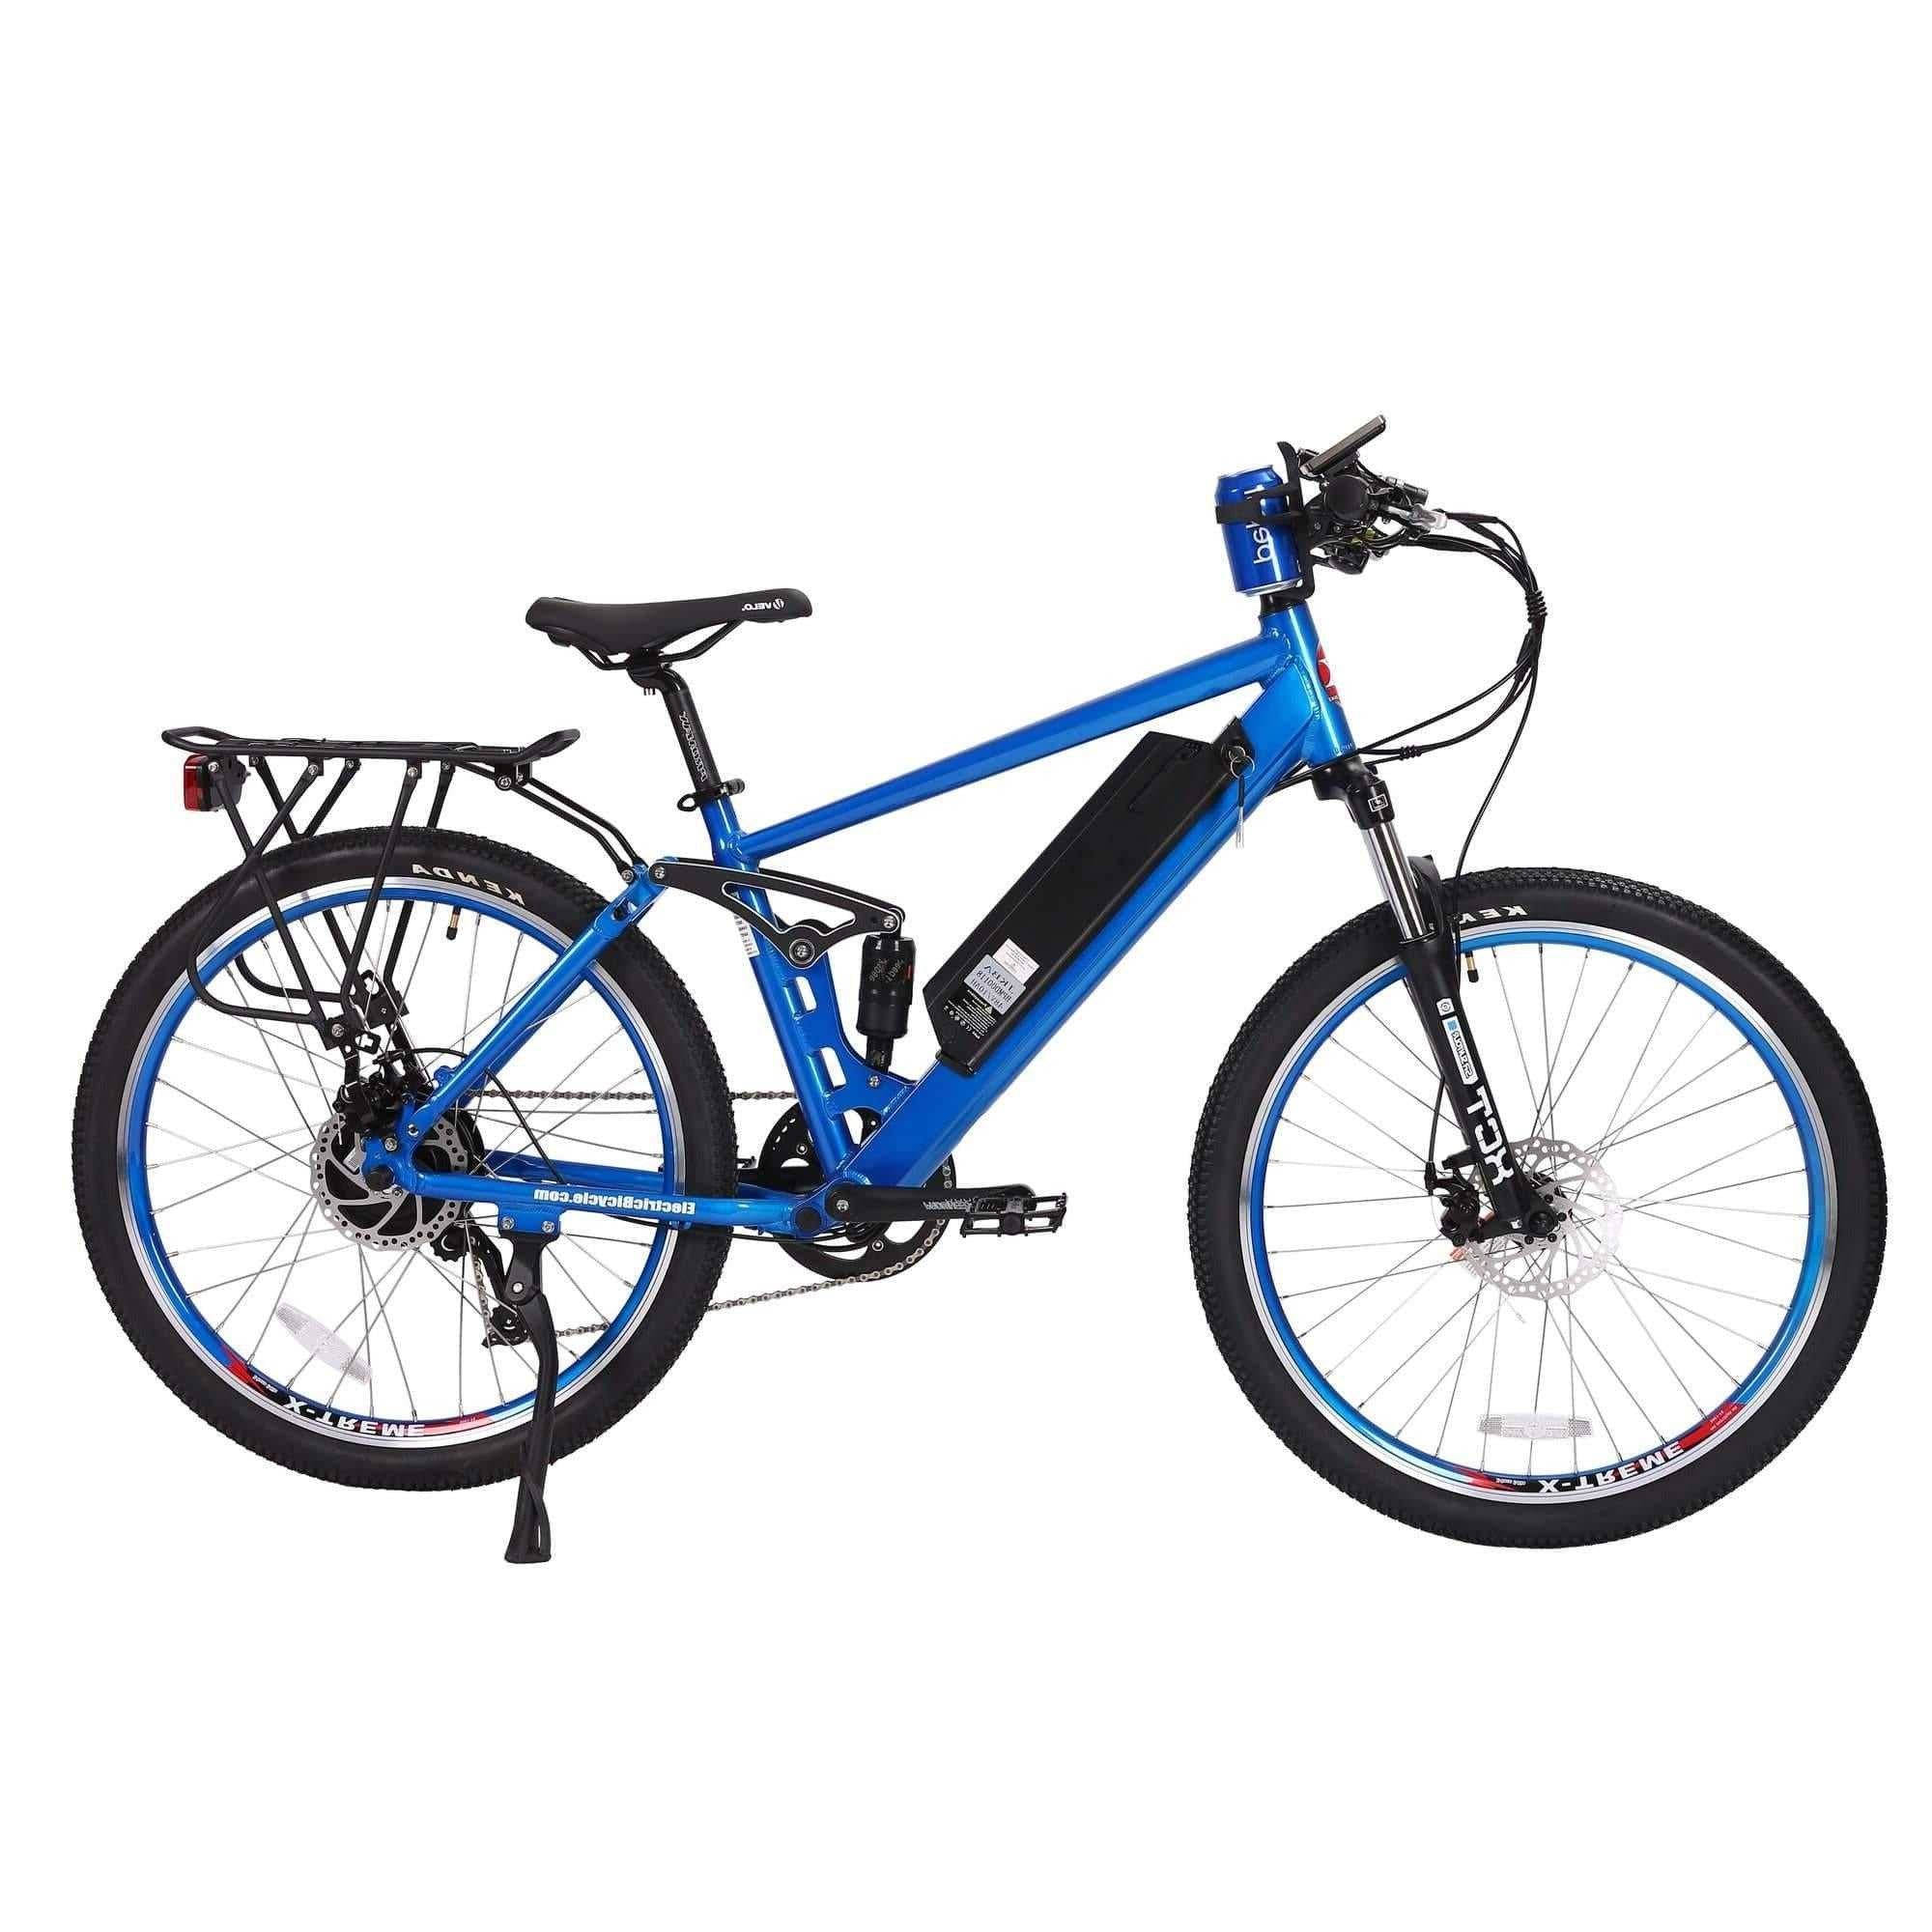 X-Treme Rubicon 500W Full-Suspension Electric Mountain Bicycle-Mountain-X-Treme-Metallic Blue-Right Side View